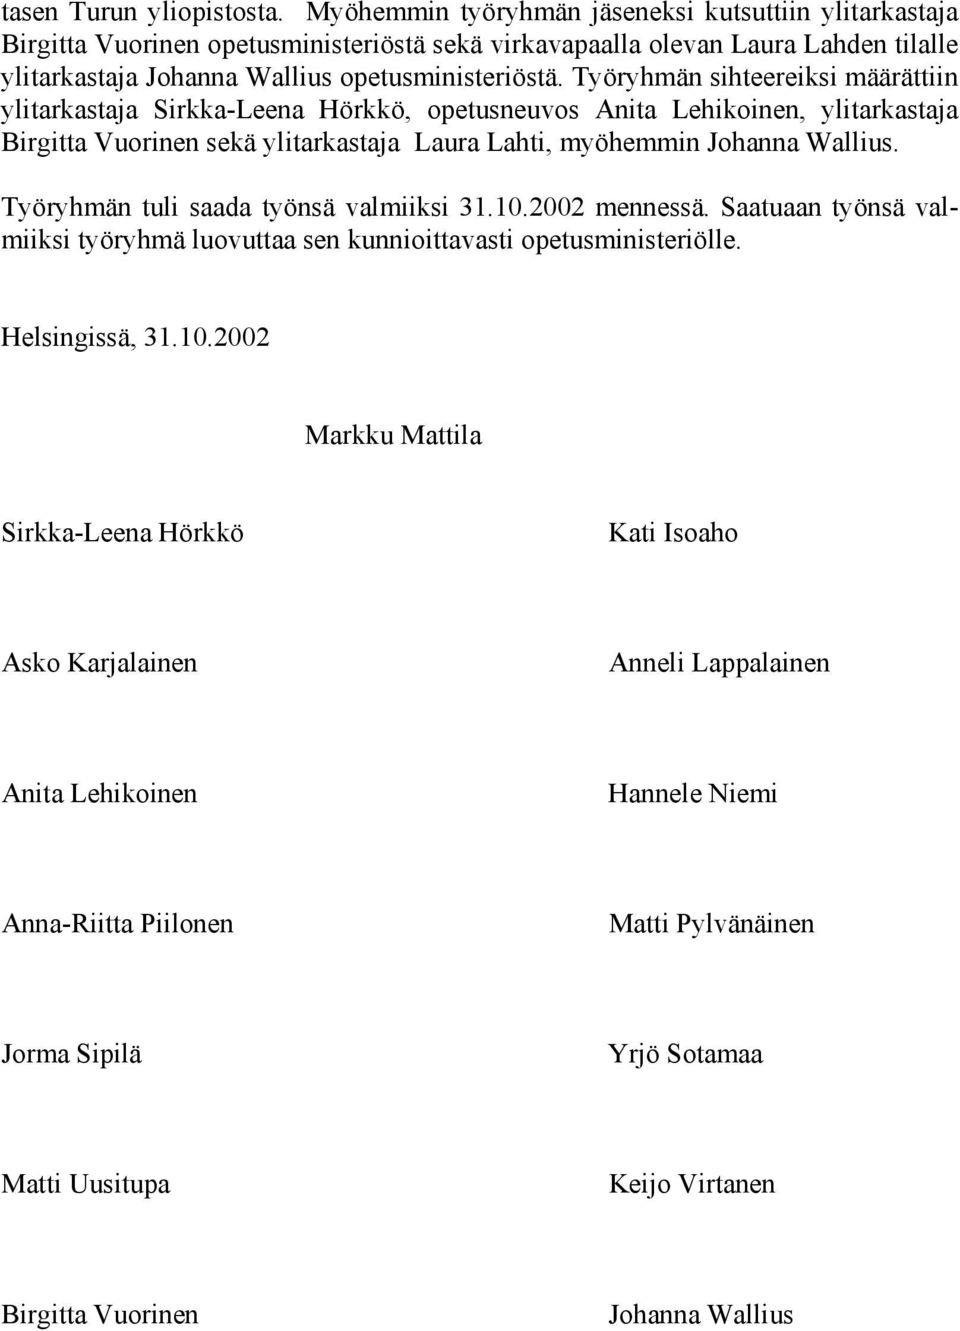 Työryhmän sihteereiksi määrättiin ylitarkastaja Sirkka-Leena Hörkkö, opetusneuvos Anita Lehikoinen, ylitarkastaja Birgitta Vuorinen sekä ylitarkastaja Laura Lahti, myöhemmin Johanna Wallius.